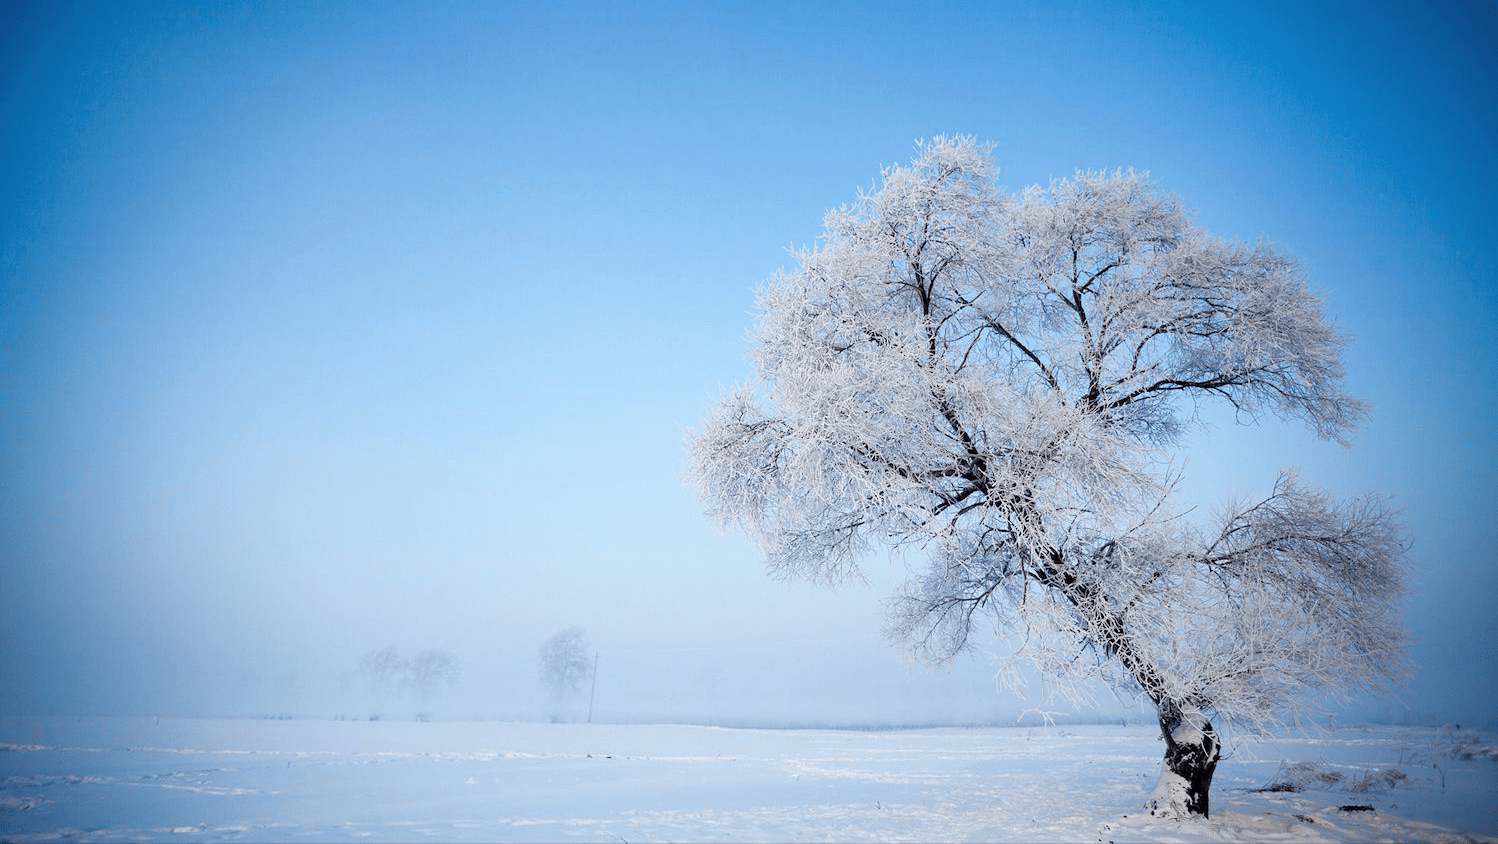 中国雪景图片最美图片